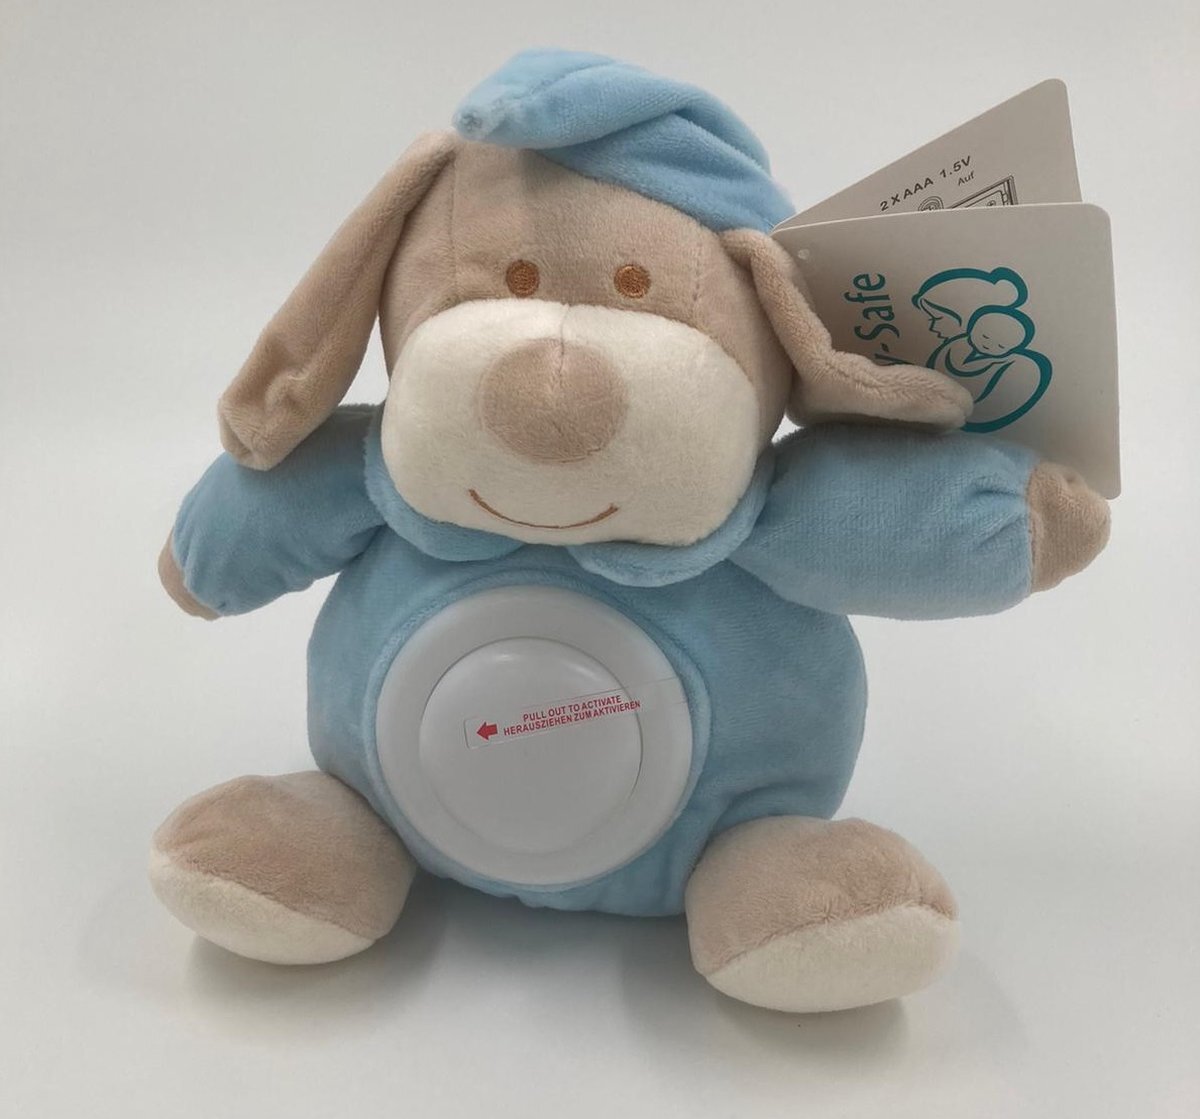 Winfried Kögler GmbH - KF Baby knuffel BLAUW - model HOND met nachtlampje - voor kinderen - LED nachtlamp op batterij - meerdere kleuren knuffels verkrijgbaar – knuffelbeest met nachtlampje